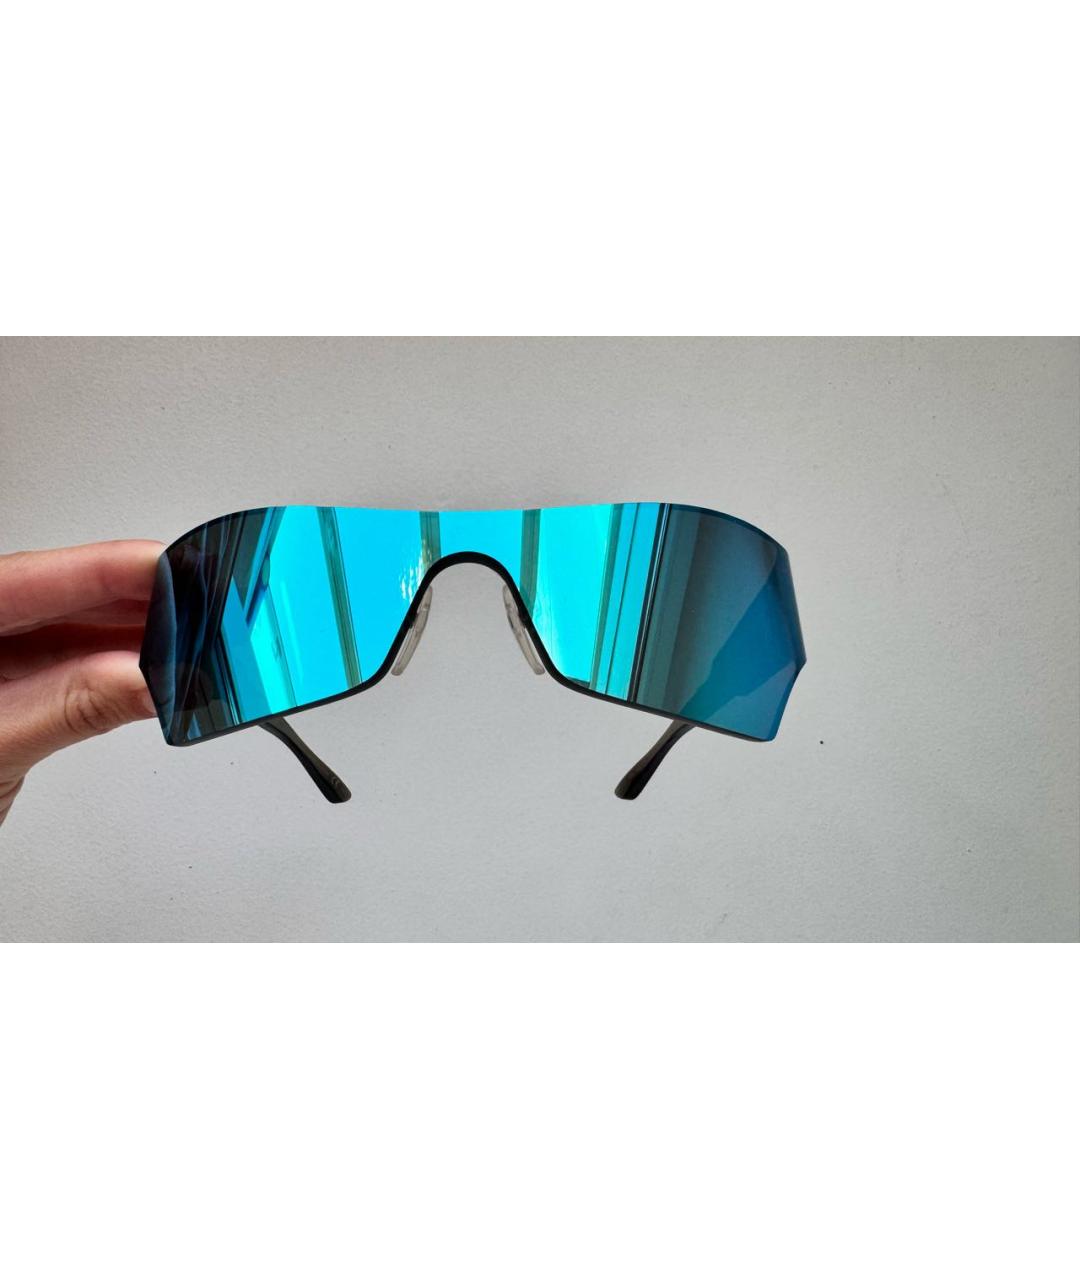 BALENCIAGA Синие пластиковые солнцезащитные очки, фото 2